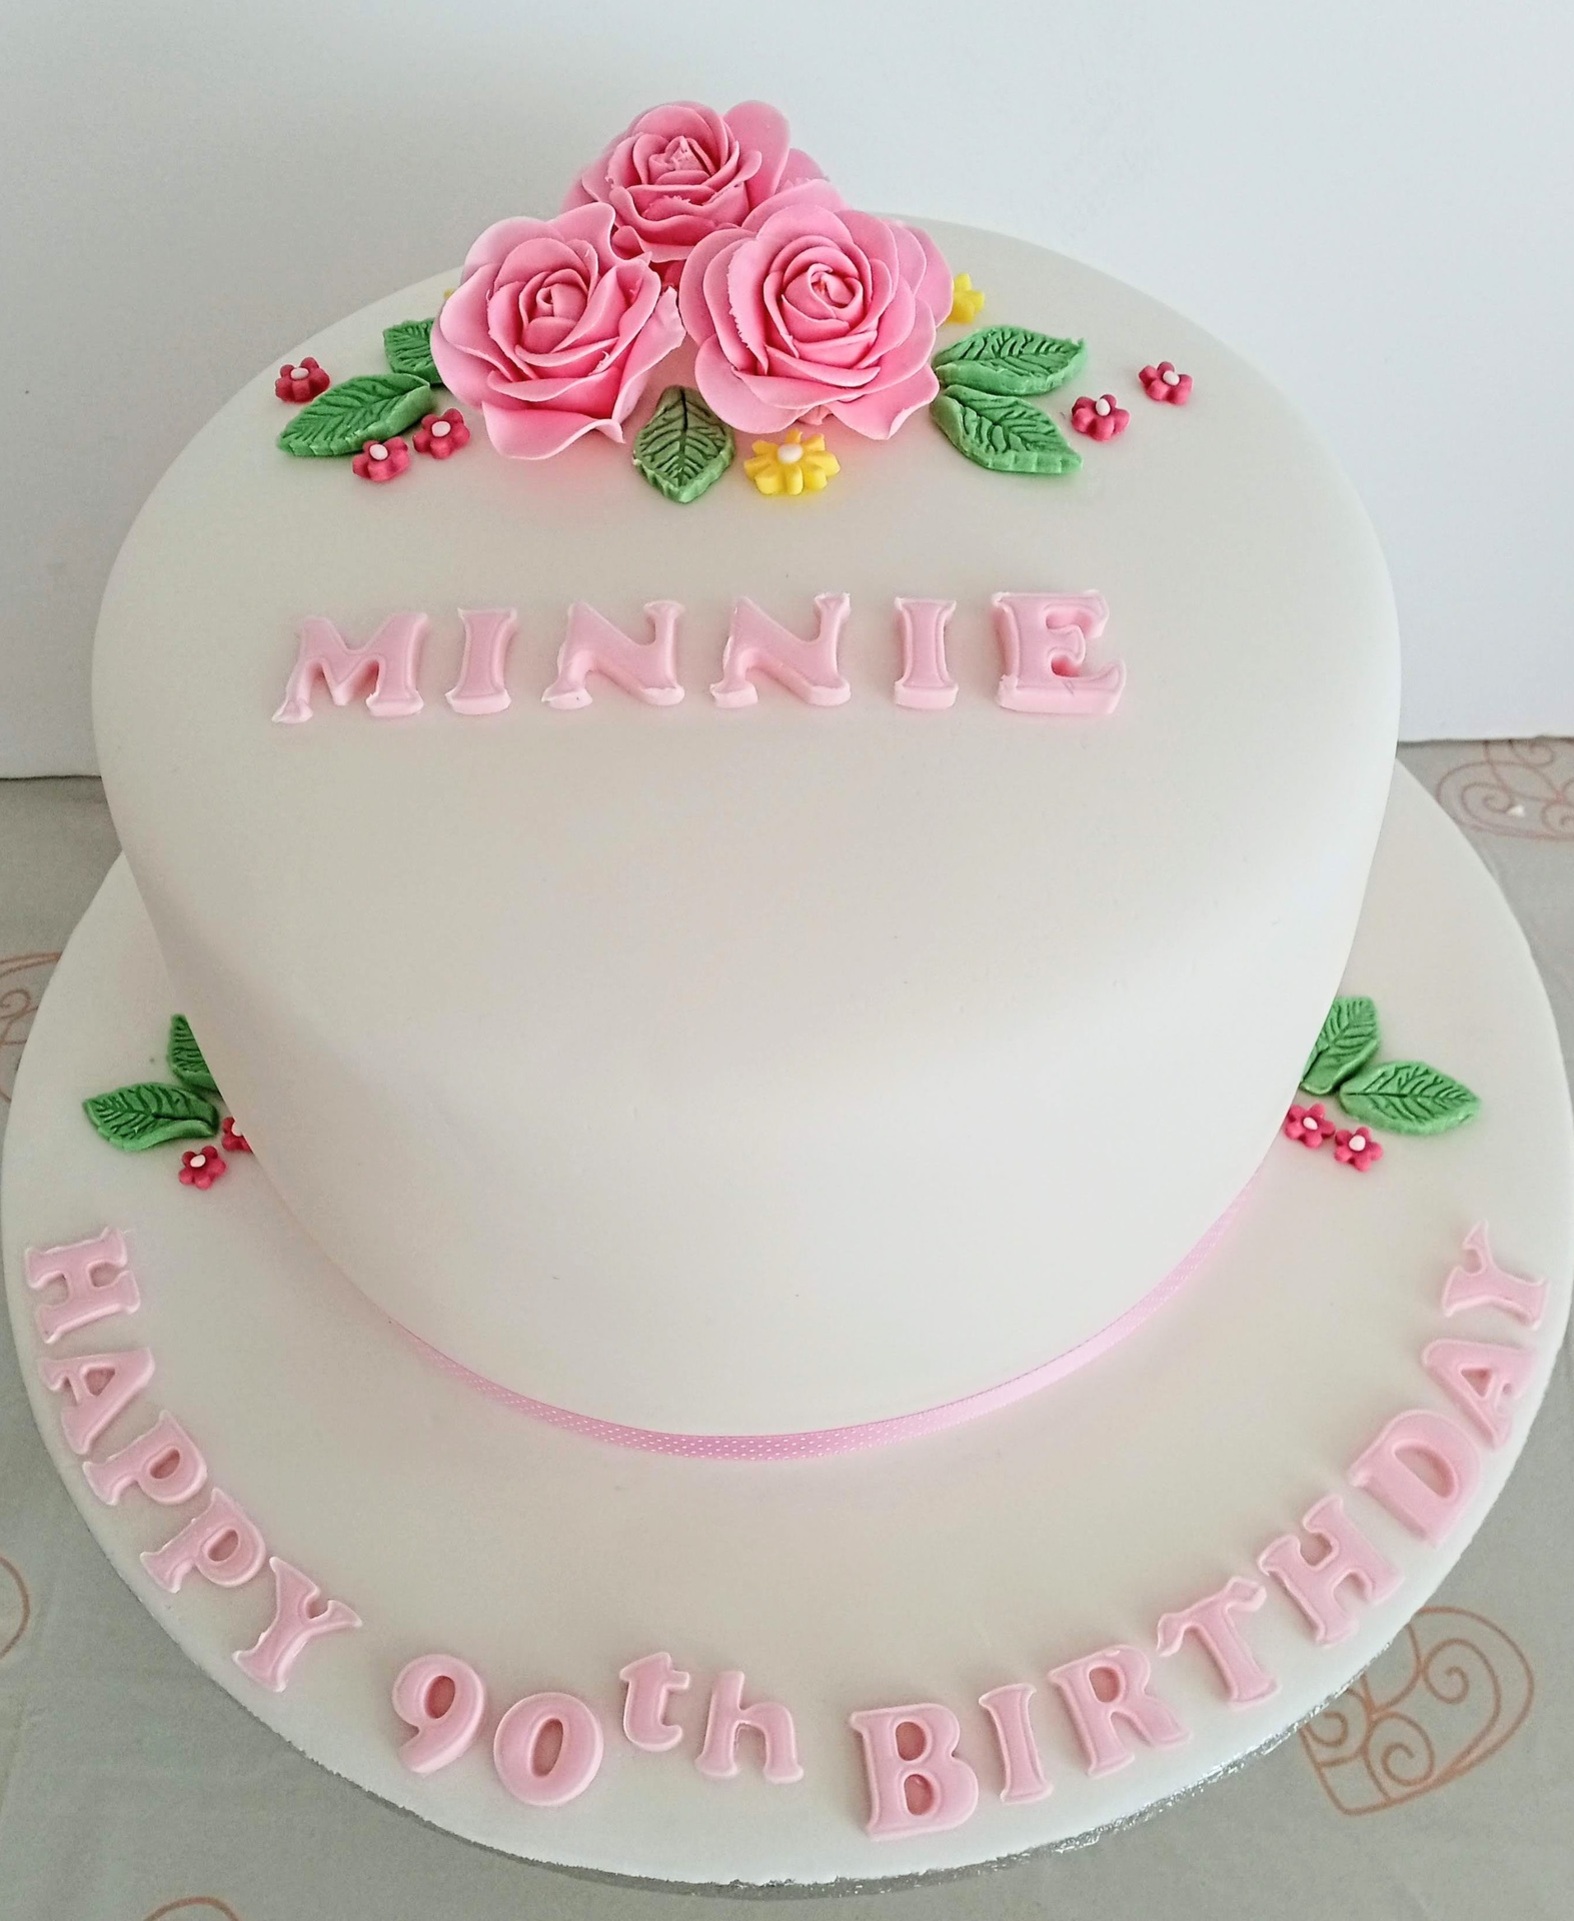 elegant ladies 90th birthday cake the sugar rose bouquet